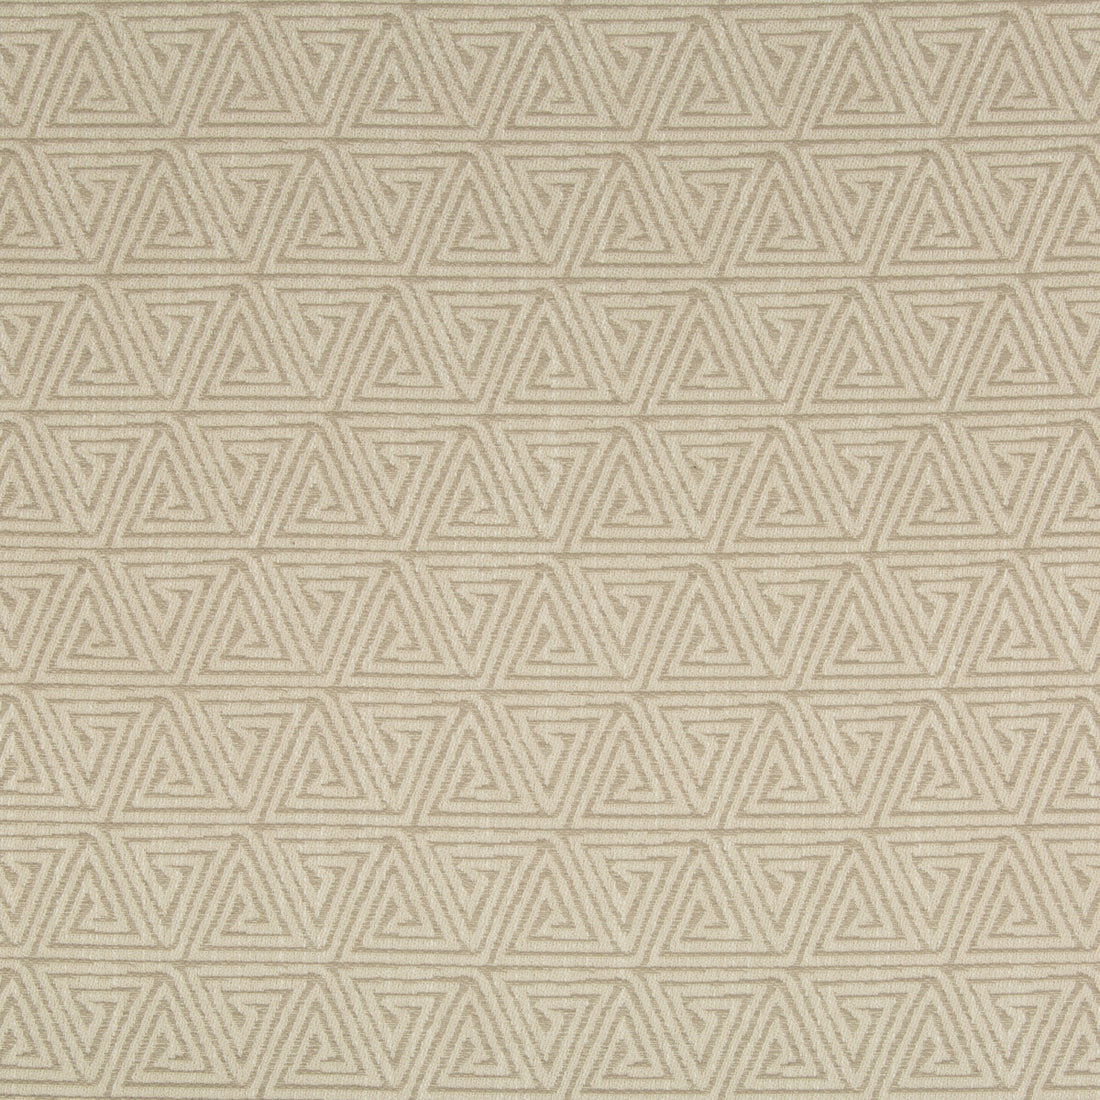 Kravet Basics fabric in 35258-16 color - pattern 35258.16.0 - by Kravet Basics